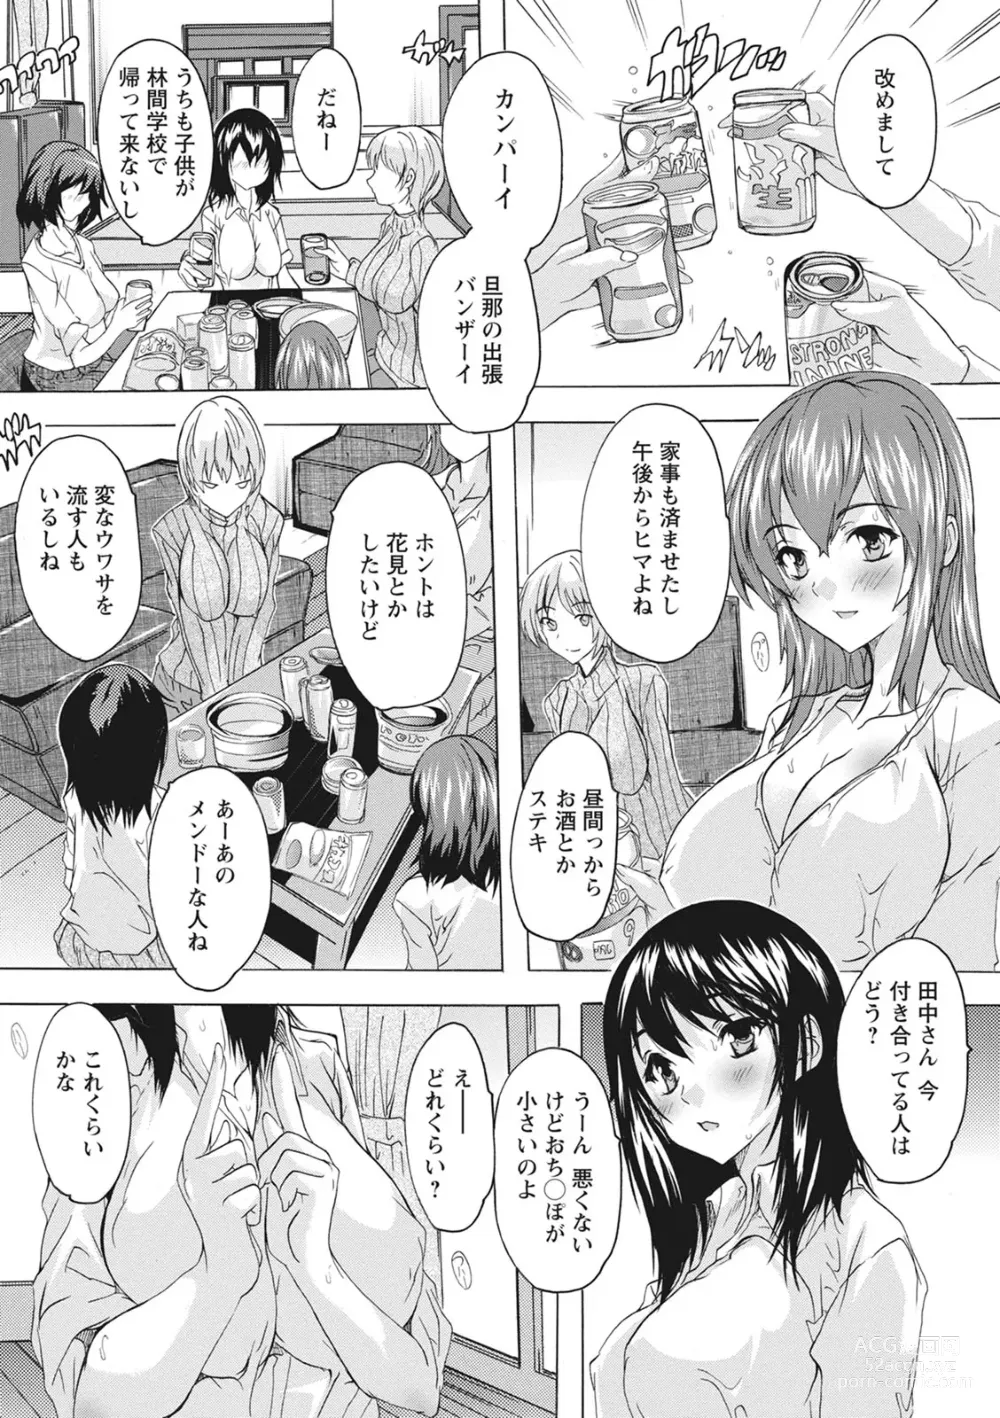 Page 6 of manga Haramase no Heya - Room to the pregnant